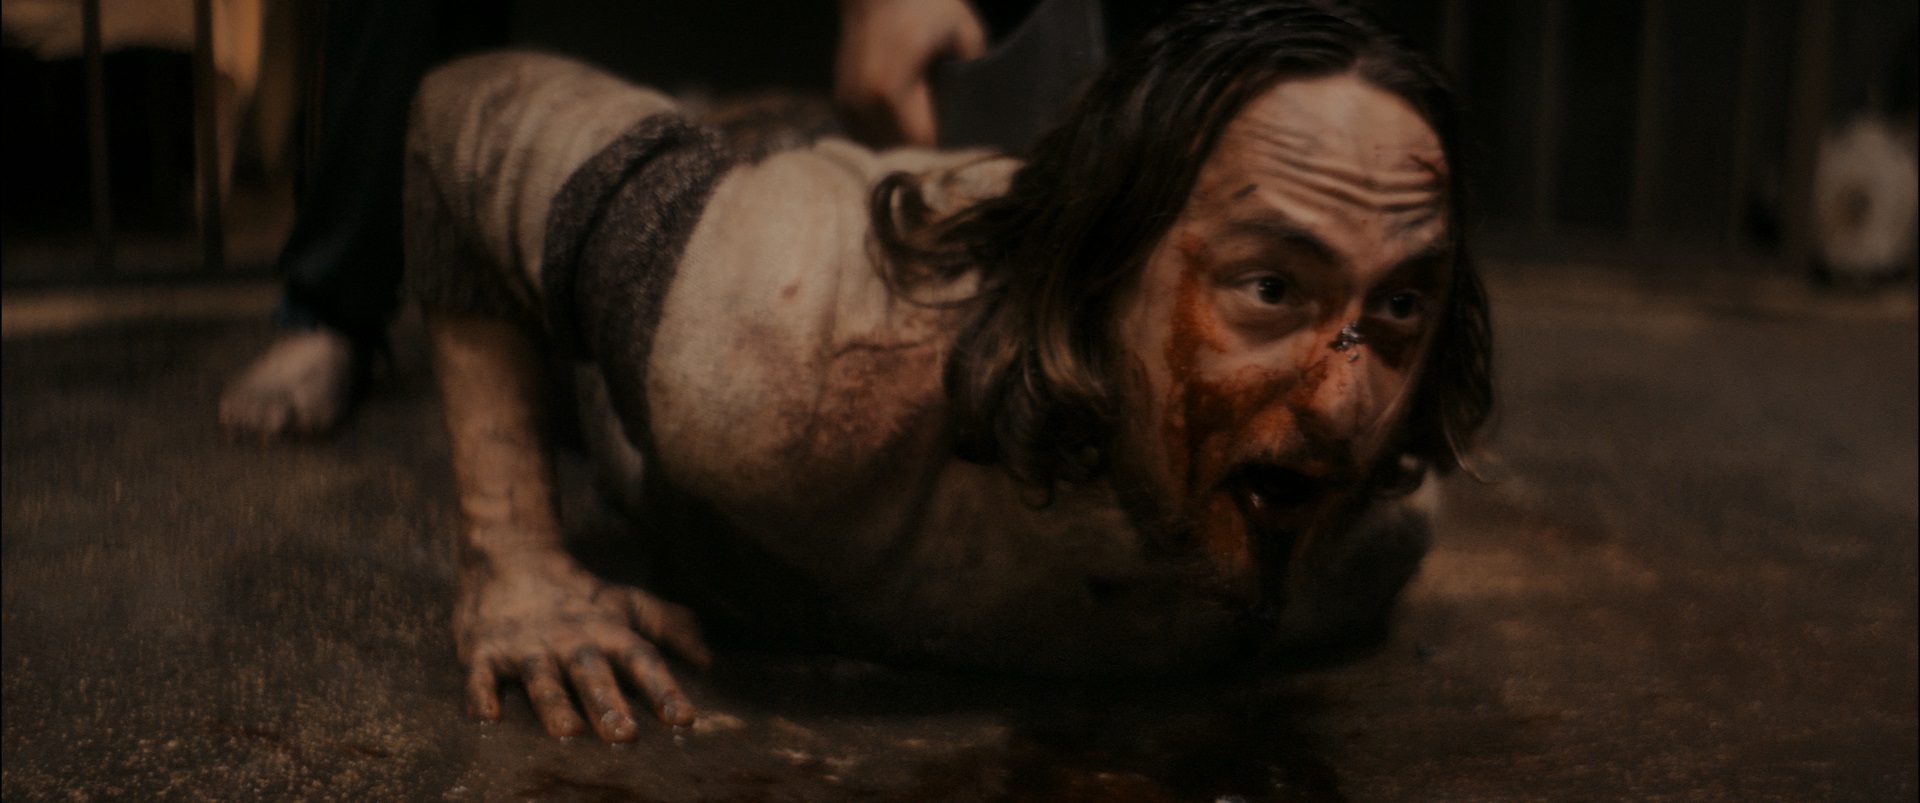 Online il trailer ufficiale di “The Well”, il nuovo, terrificante horror di Federico Zampaglione